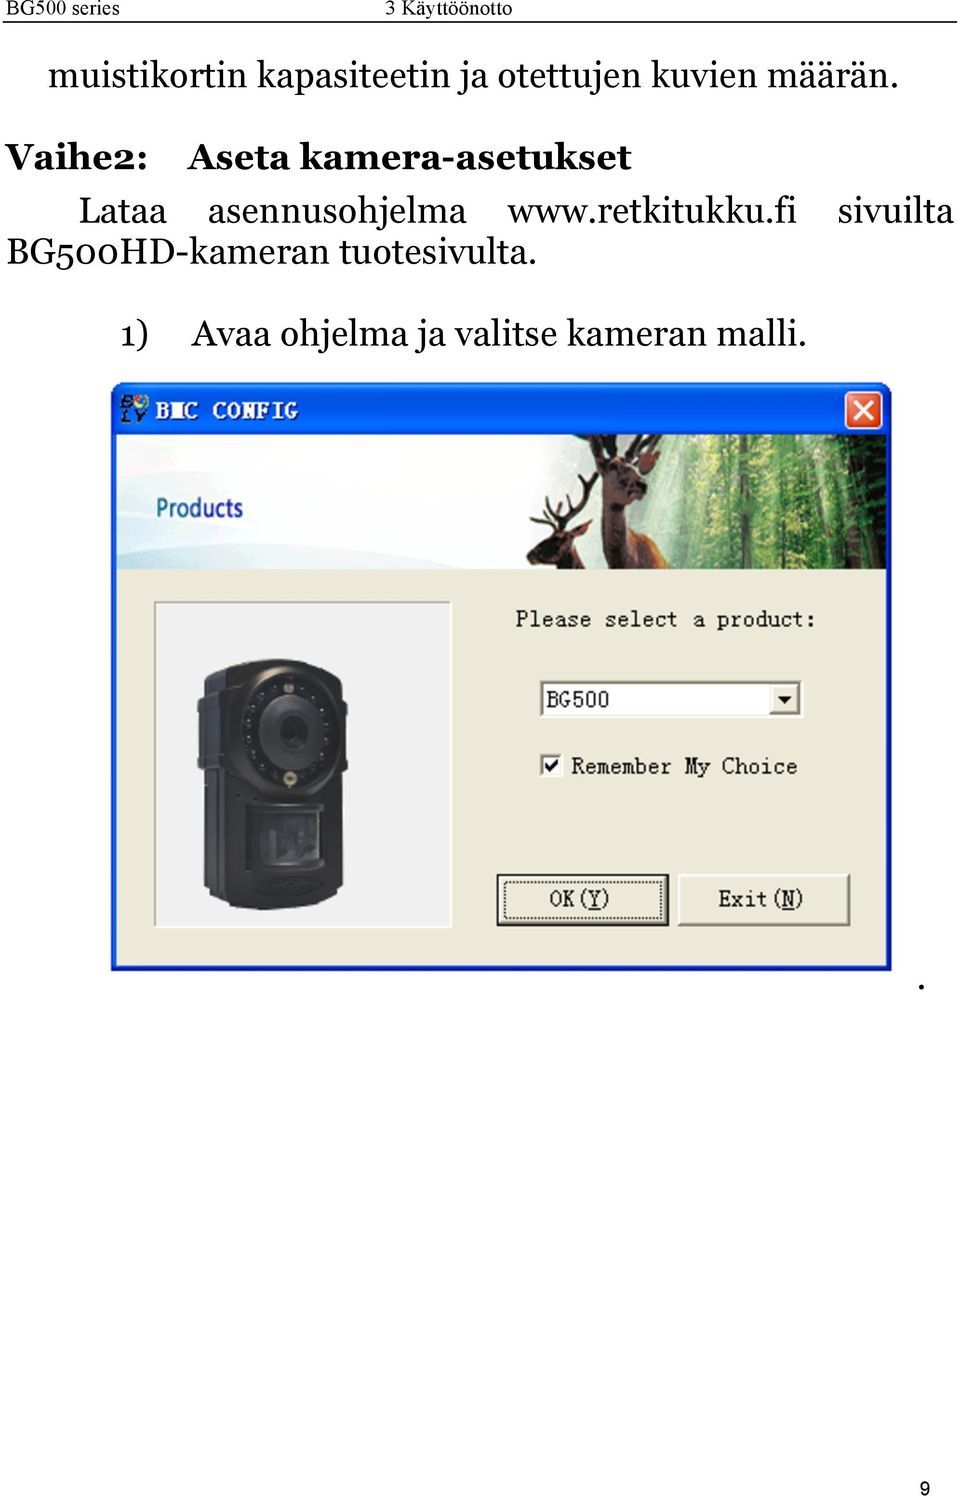 Vaihe2: Aseta kamera-asetukset Lataa asennusohjelma www.